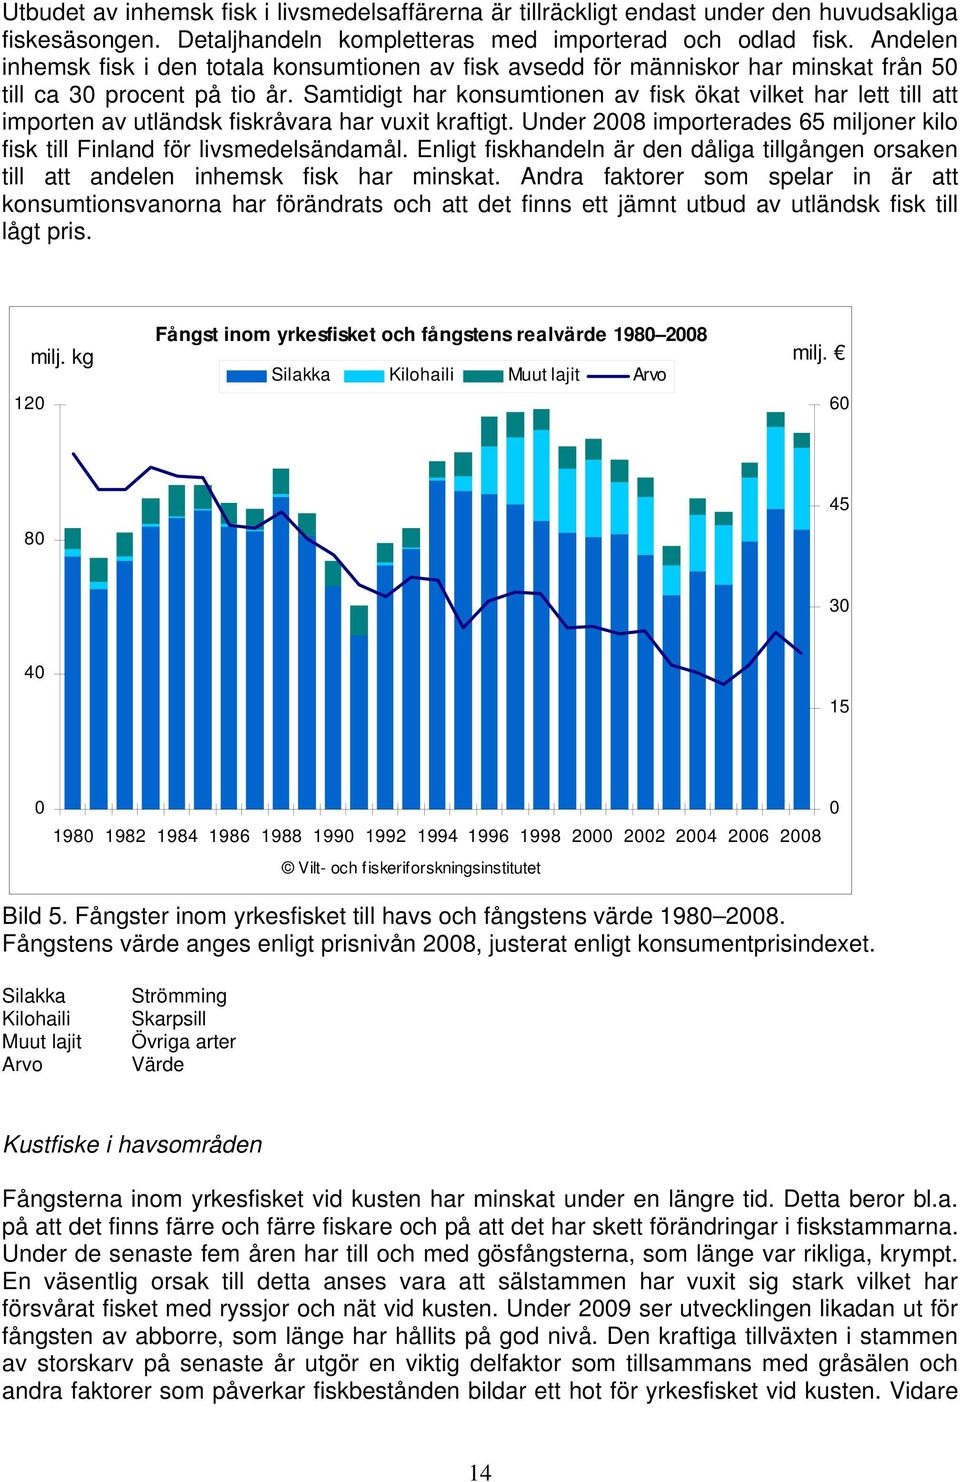 Samtidigt har konsumtionen av fisk ökat vilket har lett till att importen av utländsk fiskråvara har vuxit kraftigt. Under 2008 importerades 65 miljoner kilo fisk till Finland för livsmedelsändamål.